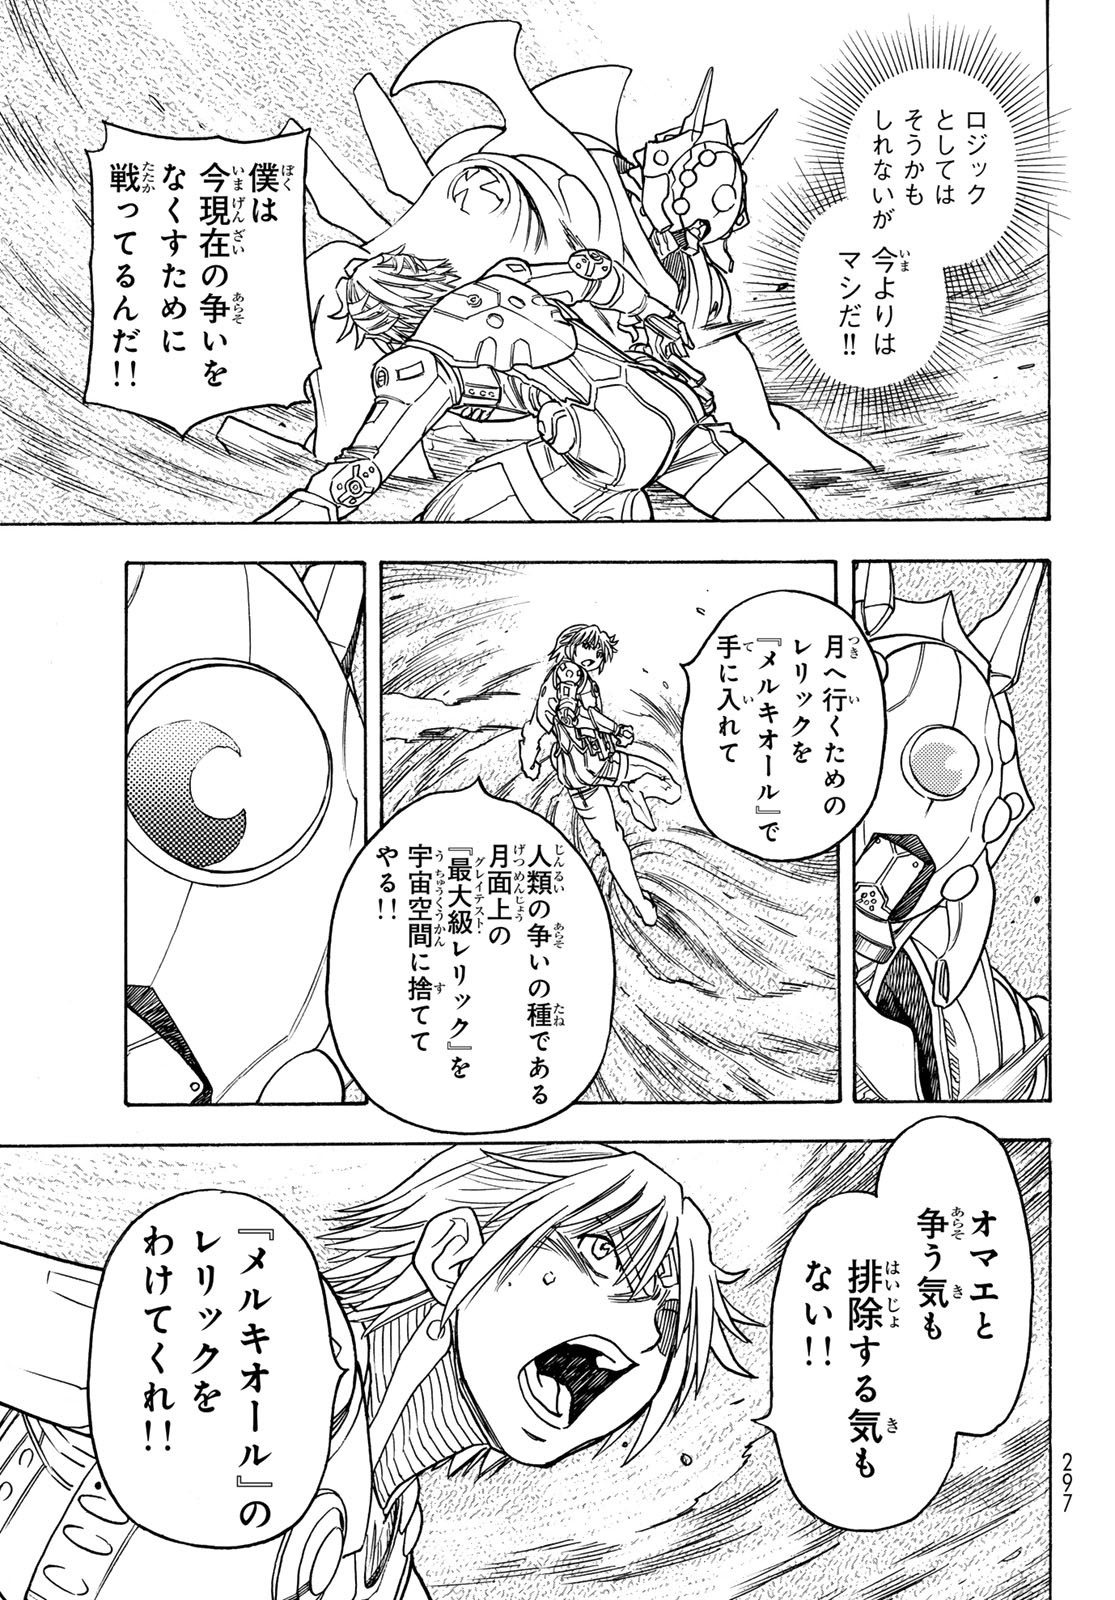 Mugou no Schnell Gear: Chikyuugai Kisouka AI - Chapter 51 - Page 13